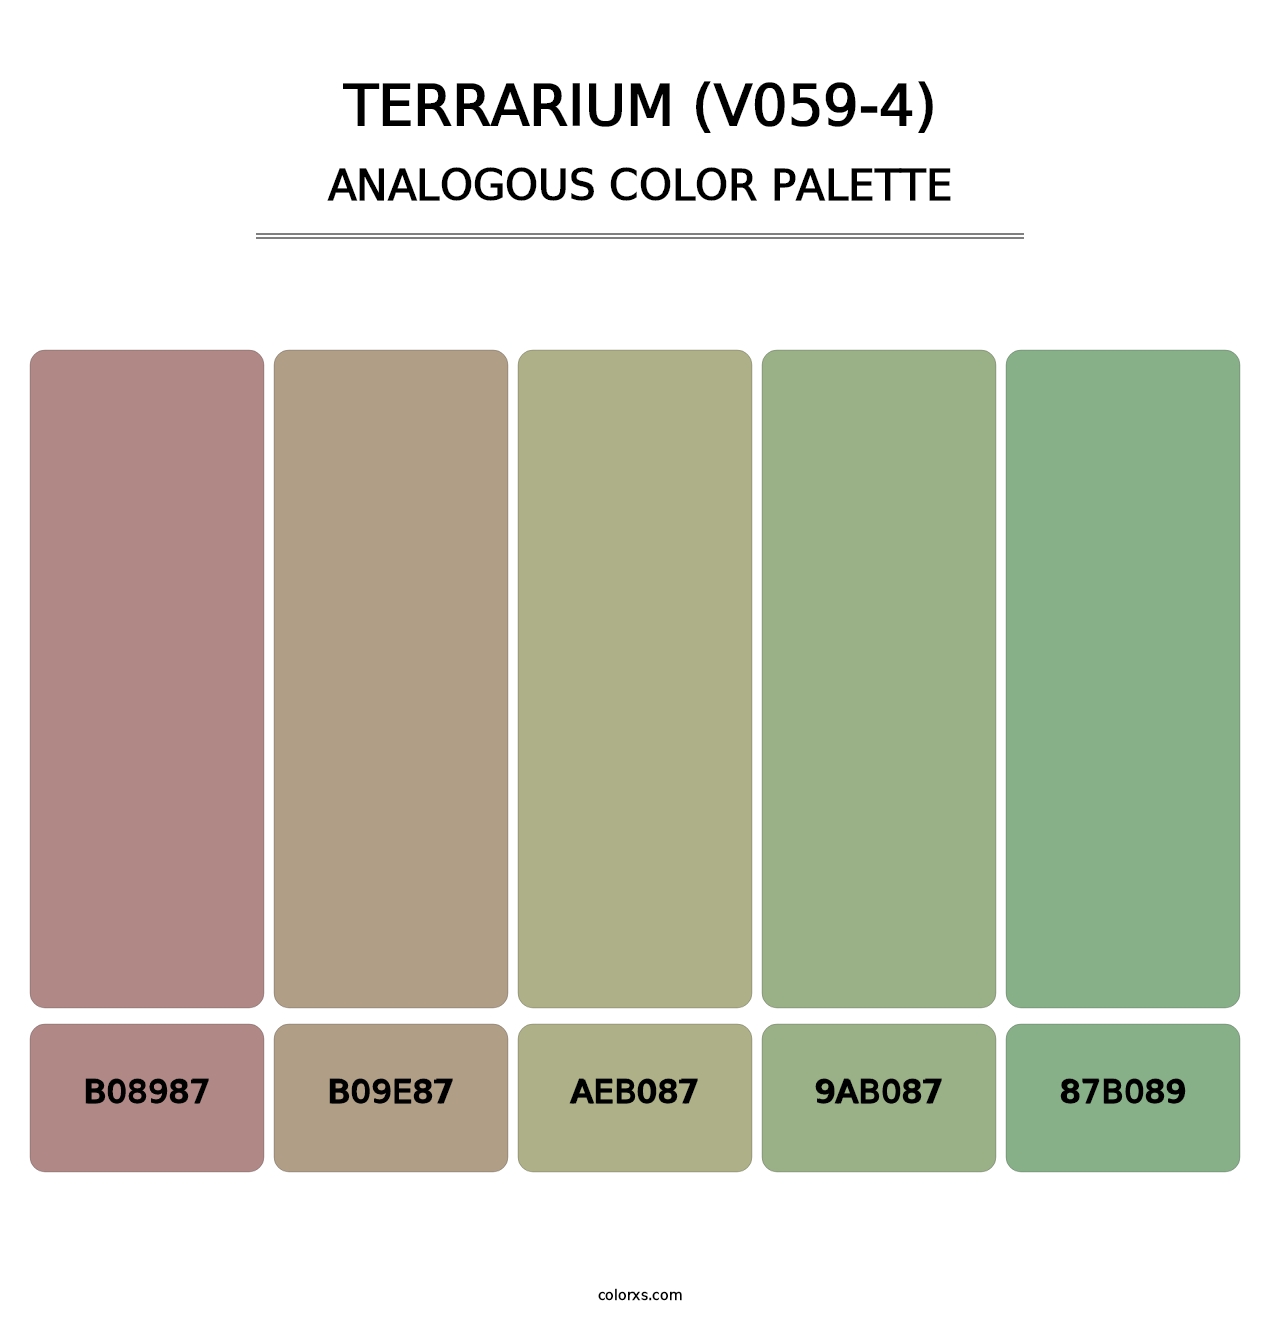 Terrarium (V059-4) - Analogous Color Palette